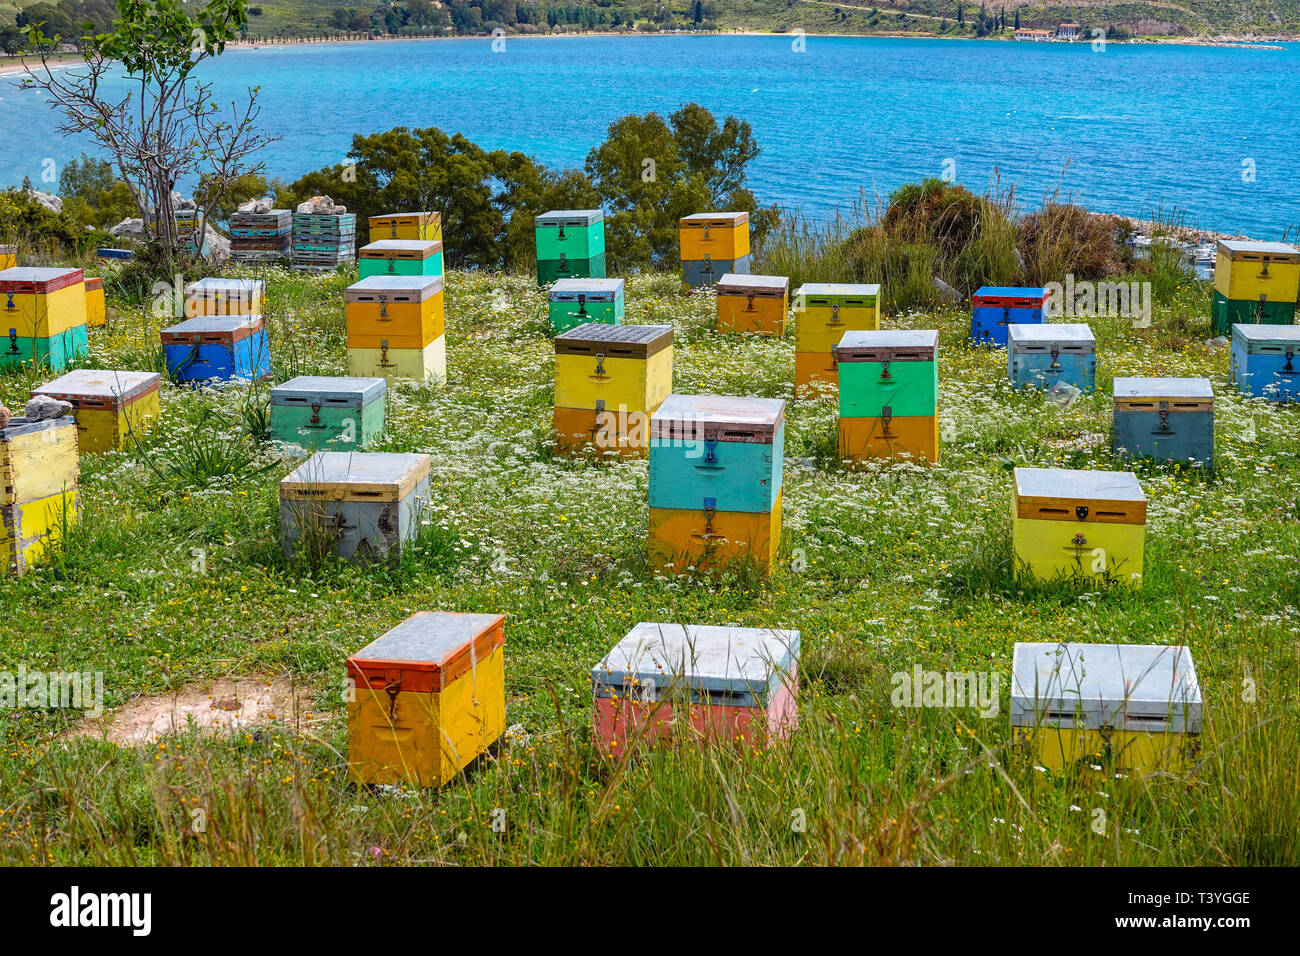 Mehrfarbige bienenstock Boxen an einem Hang mit Blick auf das Meer, Nafplion, Griechenland Stockfoto